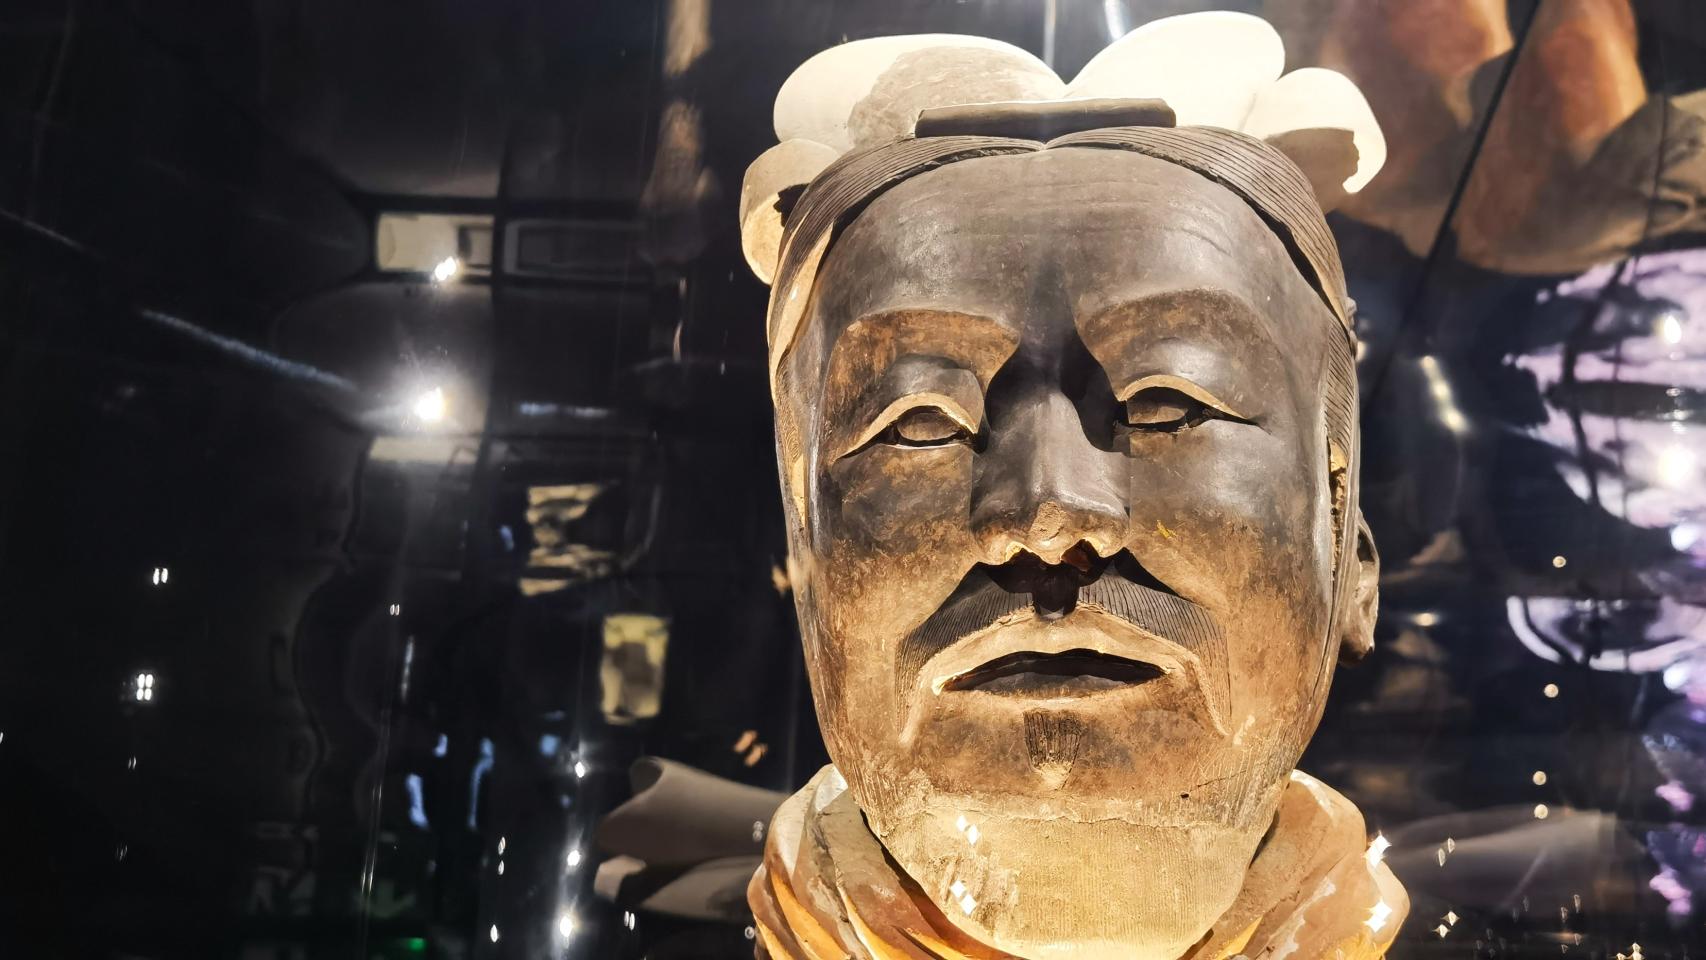 Uno de los guerreros de terracota que exhibe el Marq en su exposición sobre las dinastías Qin y Han.